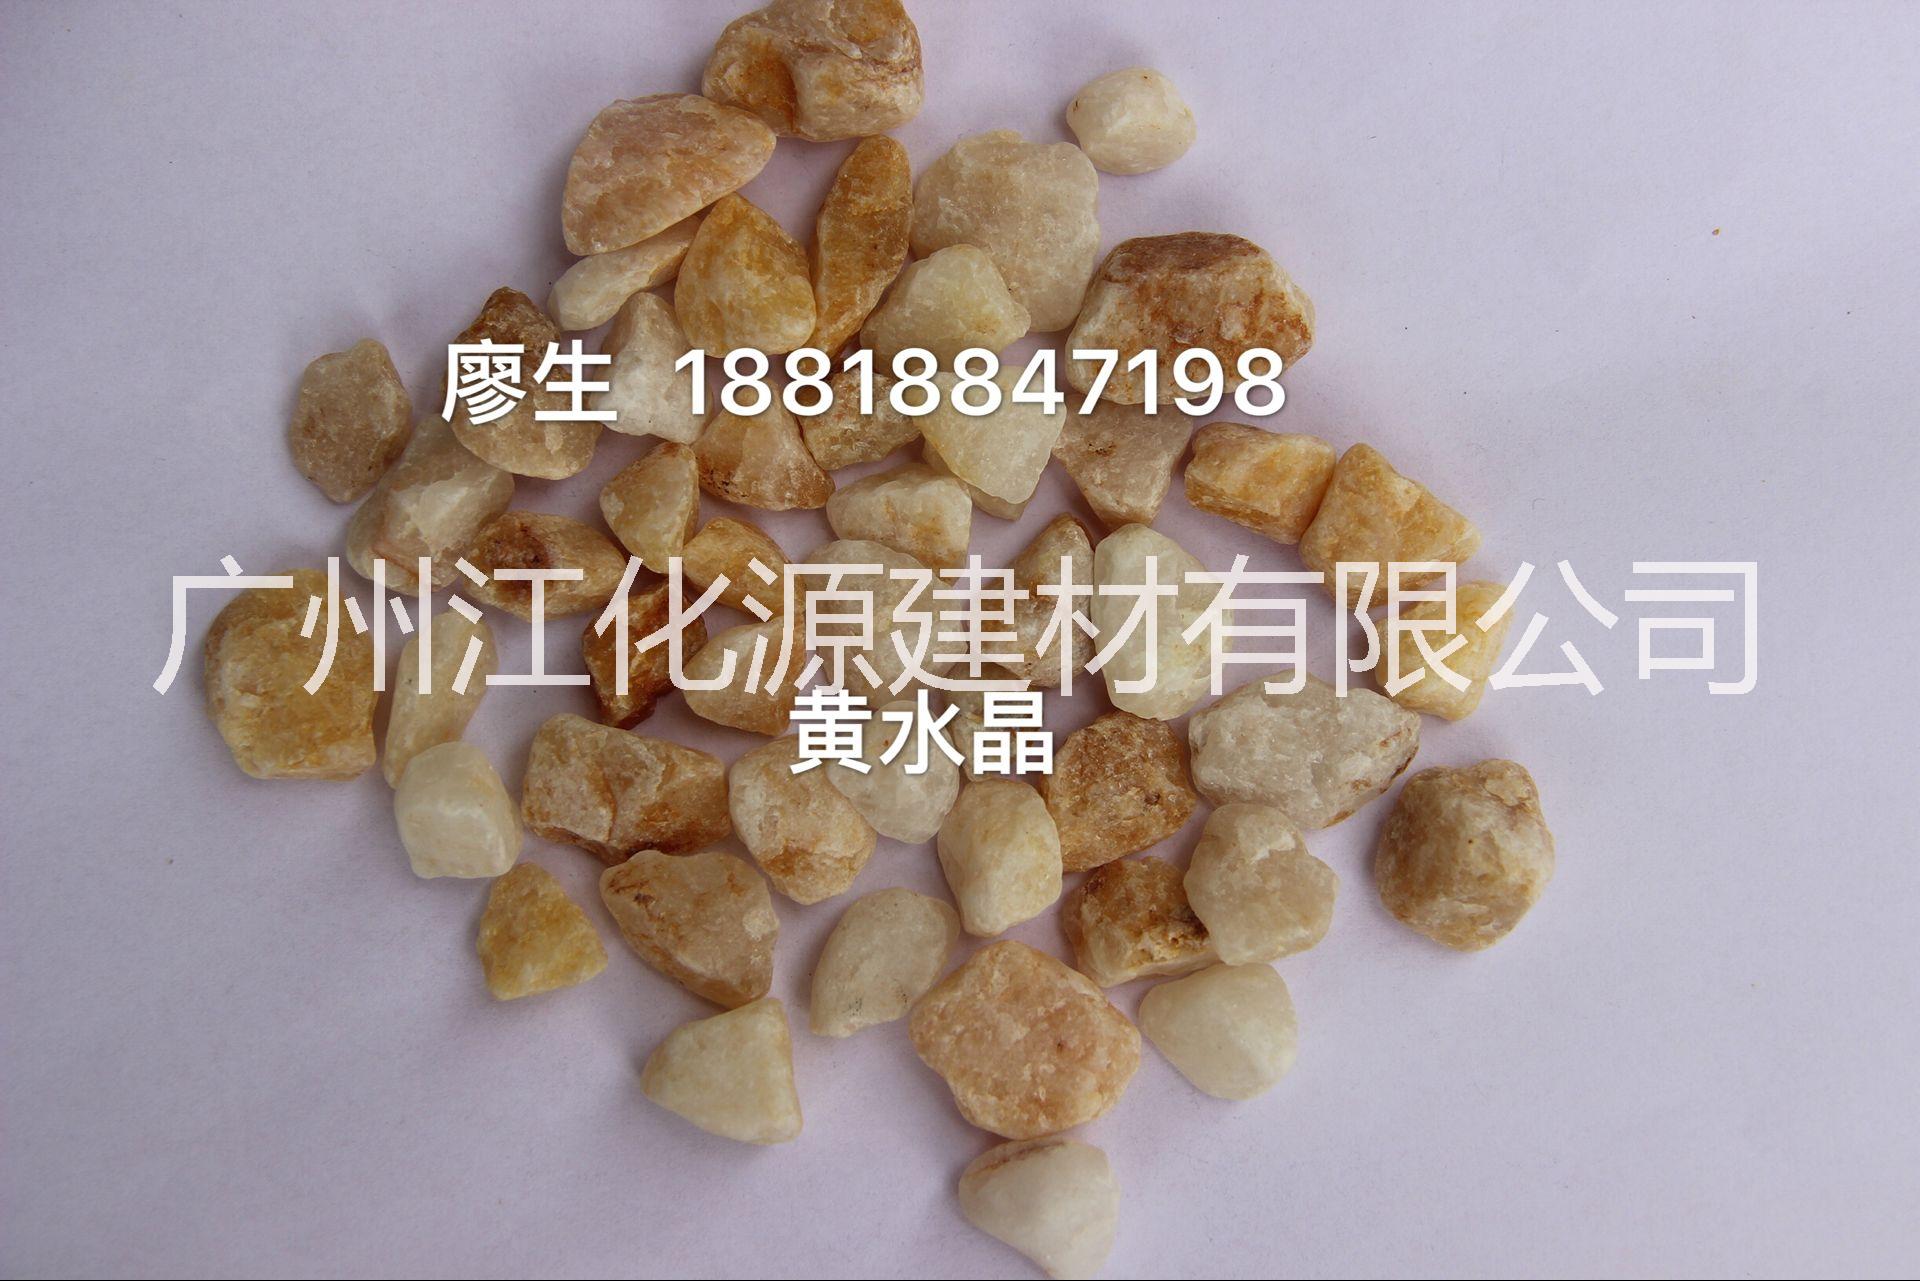 广州全国黄水晶彩砂颗粒厂家直销  大量供应人造石、石英石原材料黄水晶彩砂颗粒